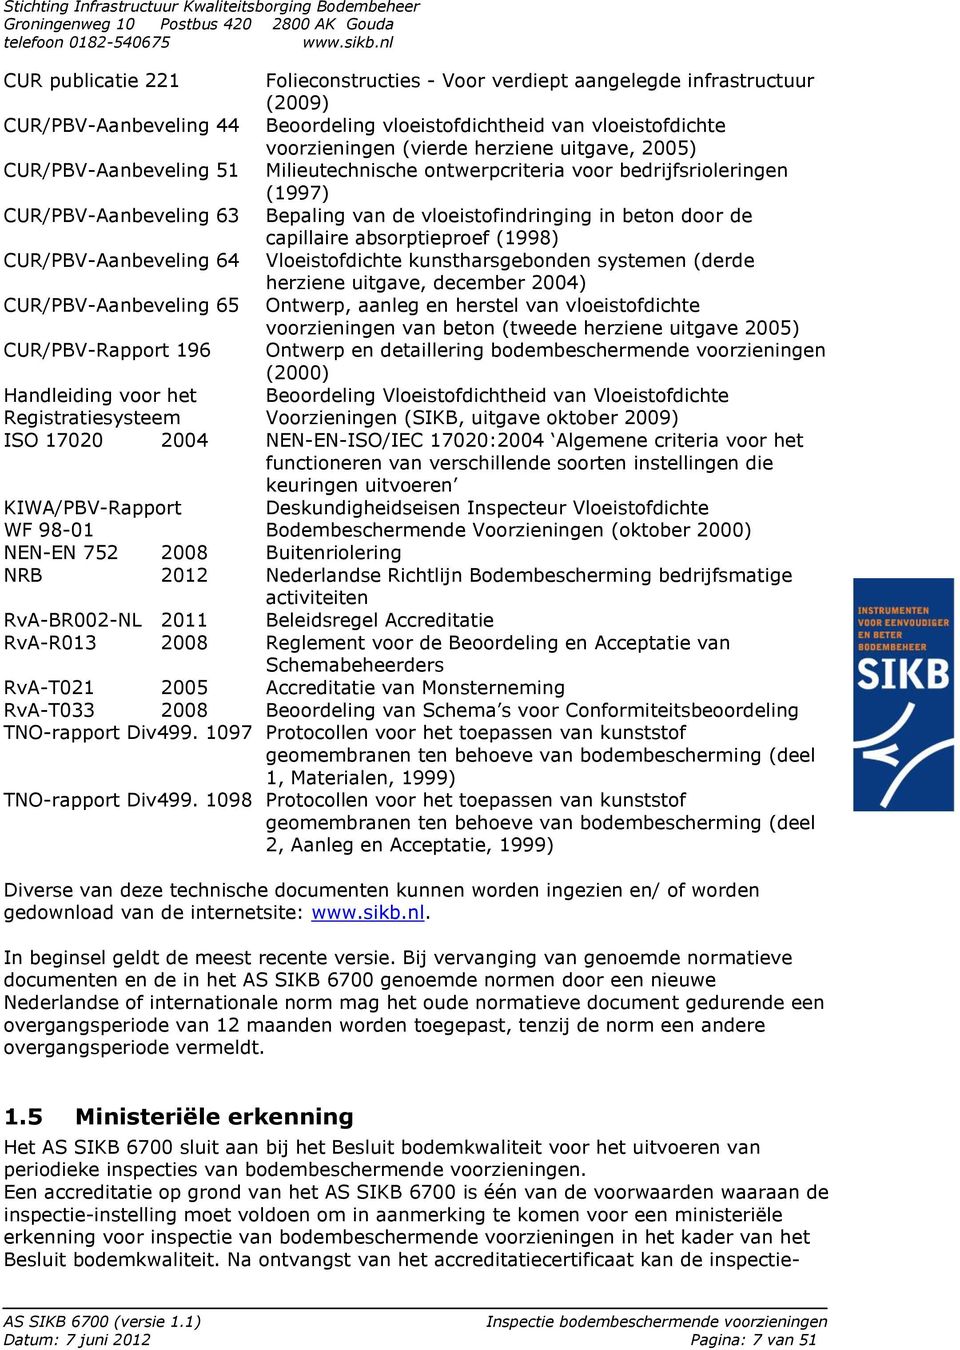 (1998) CUR/PBV-Aanbeveling 64 Vloeistofdichte kunstharsgebonden systemen (derde herziene uitgave, december 2004) CUR/PBV-Aanbeveling 65 Ontwerp, aanleg en herstel van vloeistofdichte voorzieningen